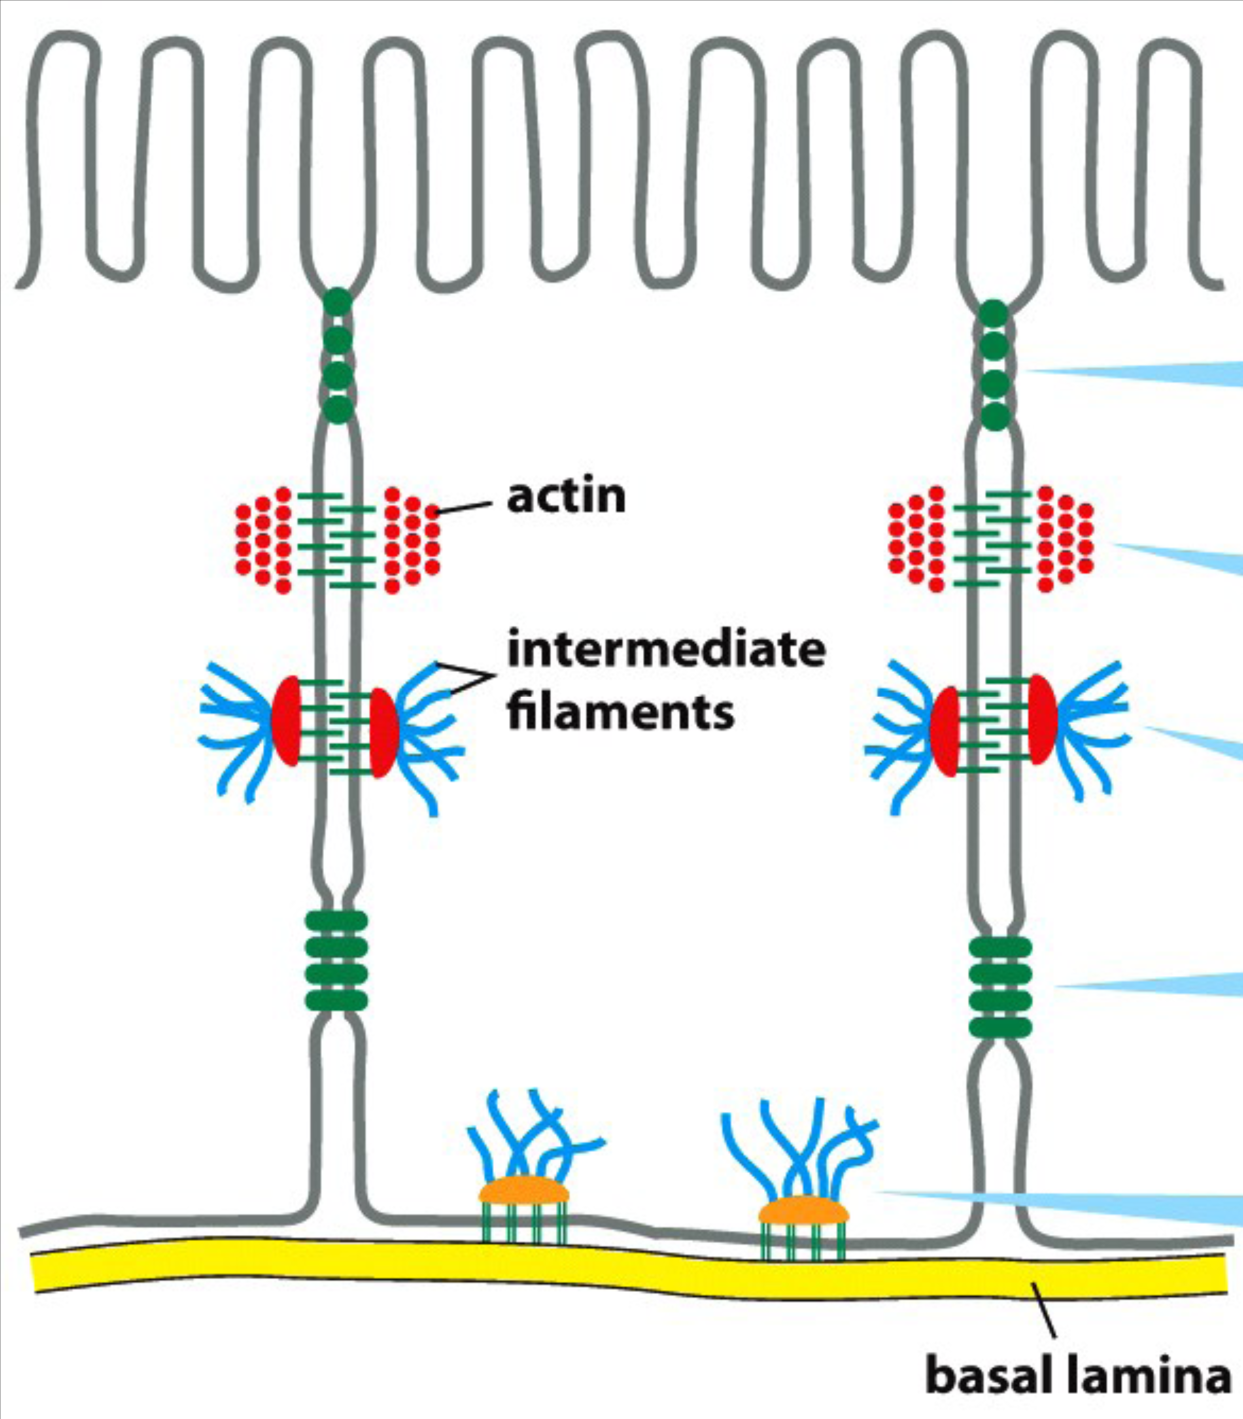 Le caderine sono proteine trasmembrana che si legano fra di loro nei domini extracellulari (legame omoﬁlo u omoﬁlico), e